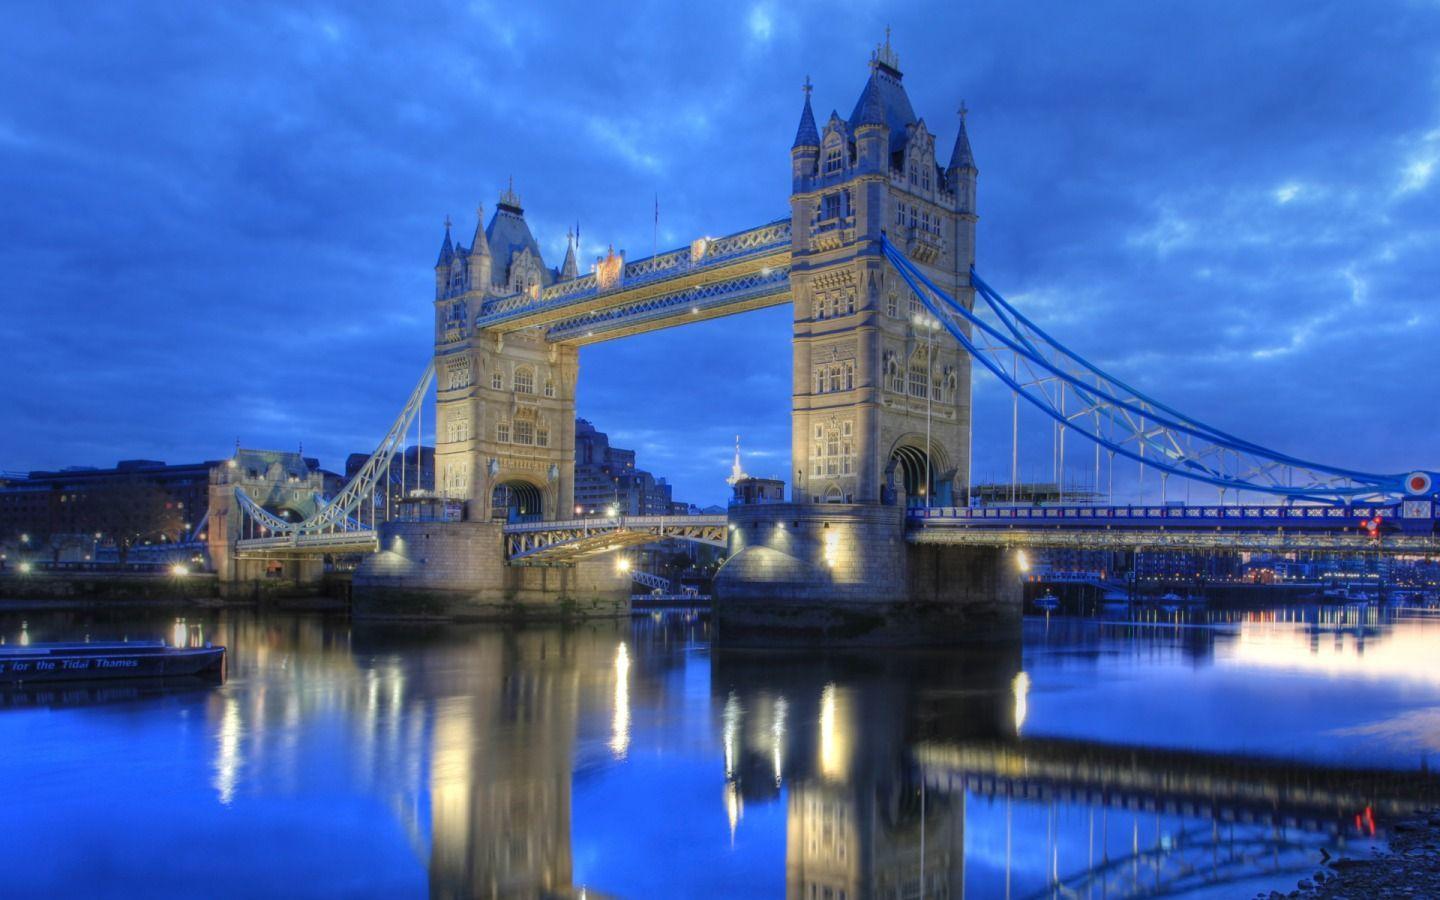 London Bridge 1440 x 900 Wallpaper